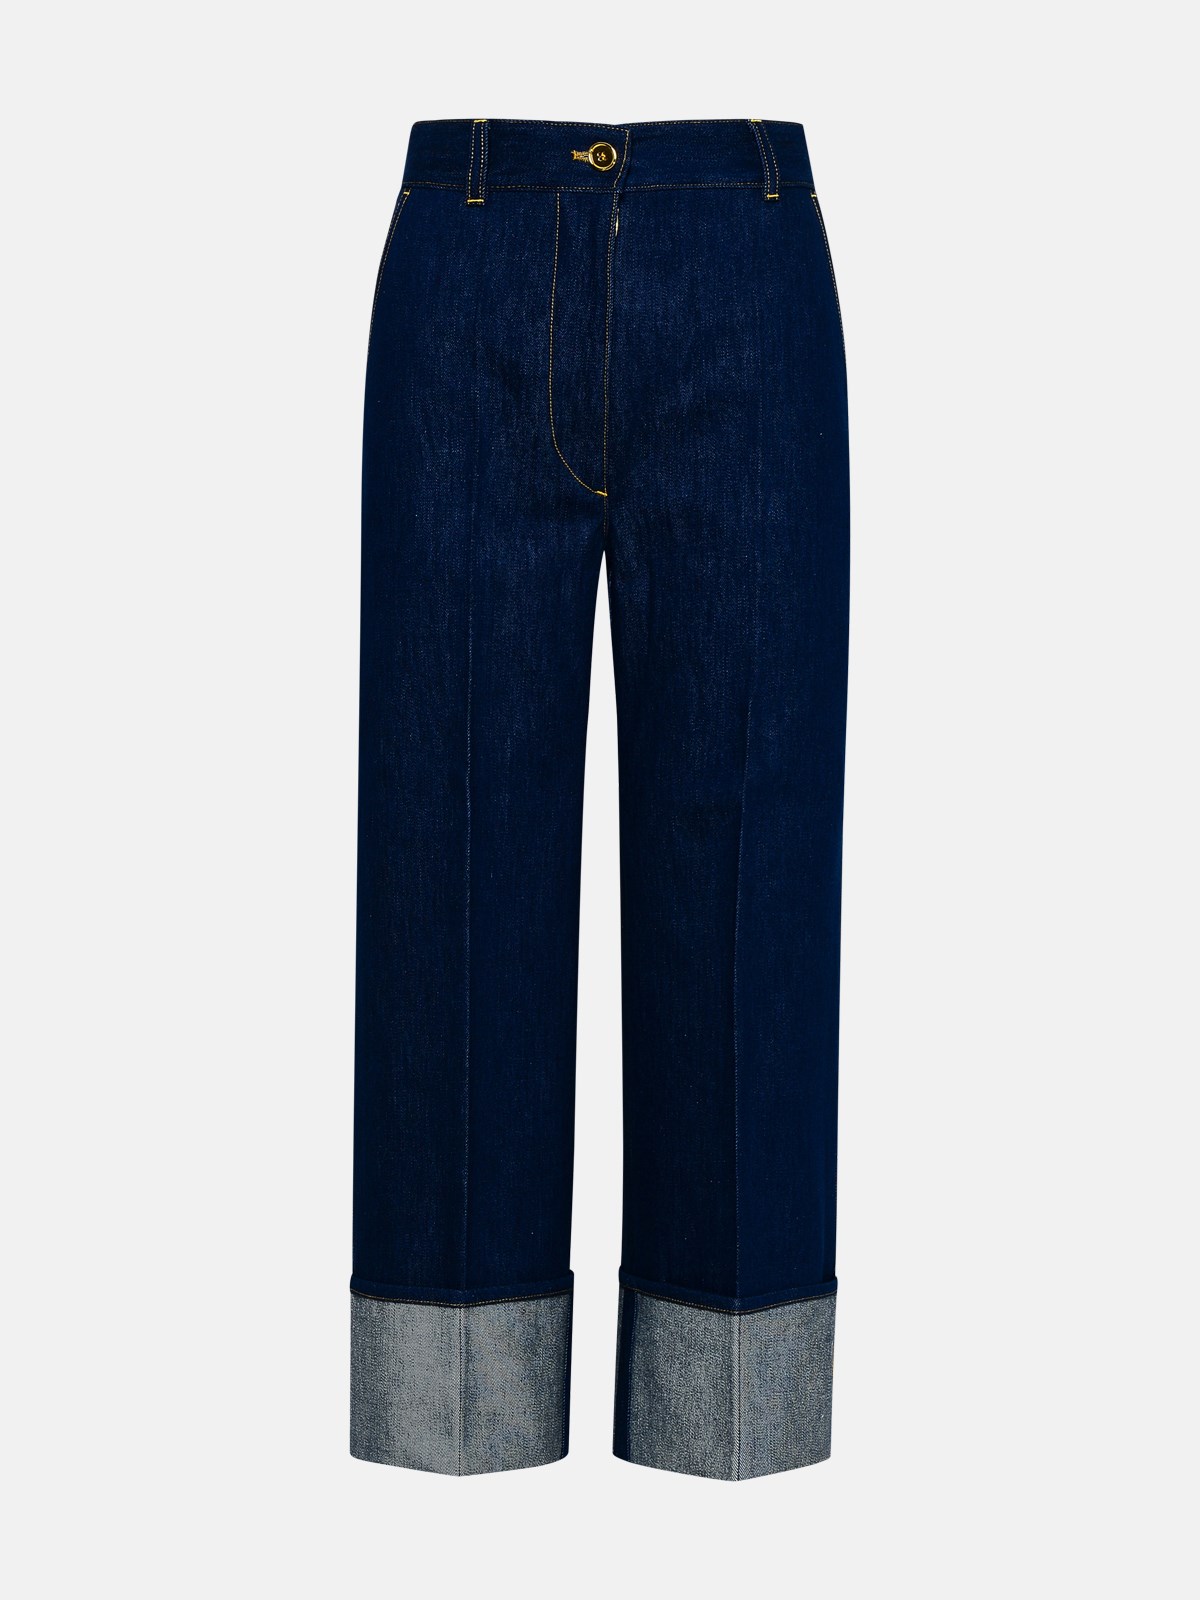 Patou Iconic Blue Cotton Jeans